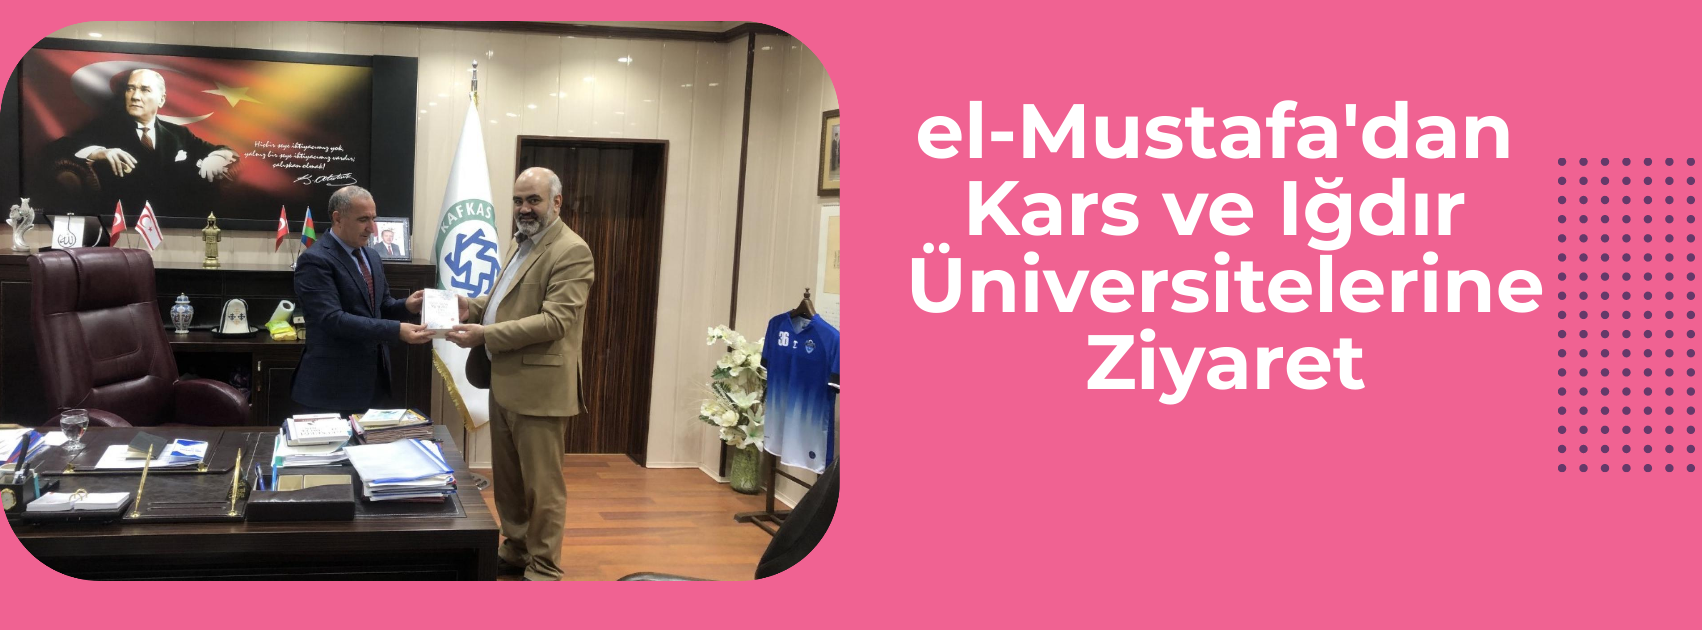 el-Mustafa'dan Kars ve Iğdır Üniversitelerine Ziyaret